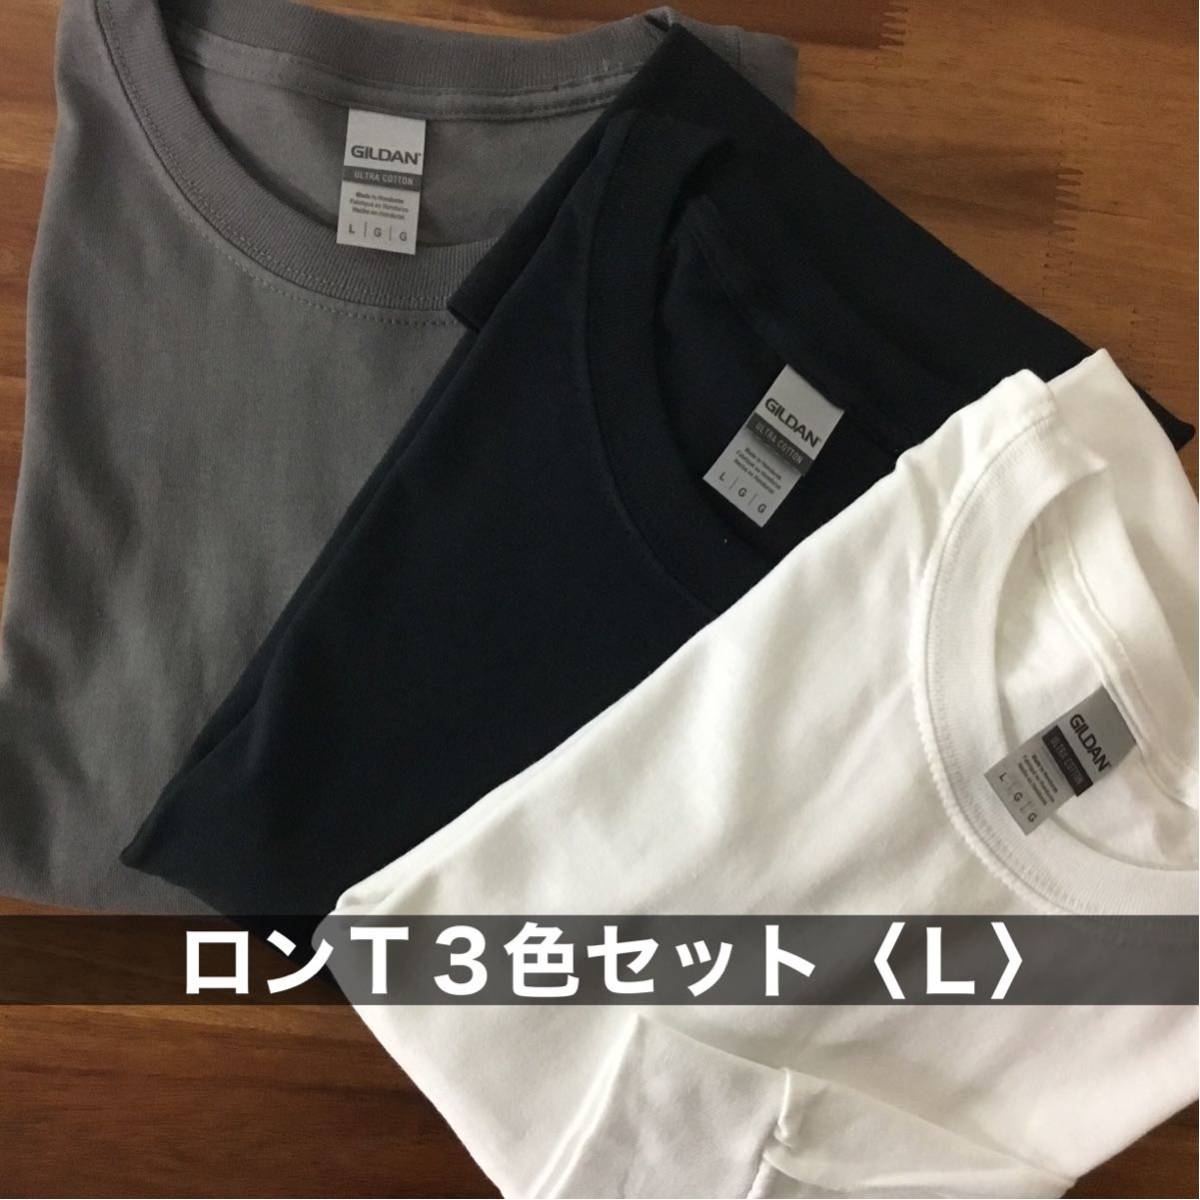 新品 ギルダン 無地ロンＴ 長袖 Tシャツ 3色セット 白 チャコール 黒 L_画像1